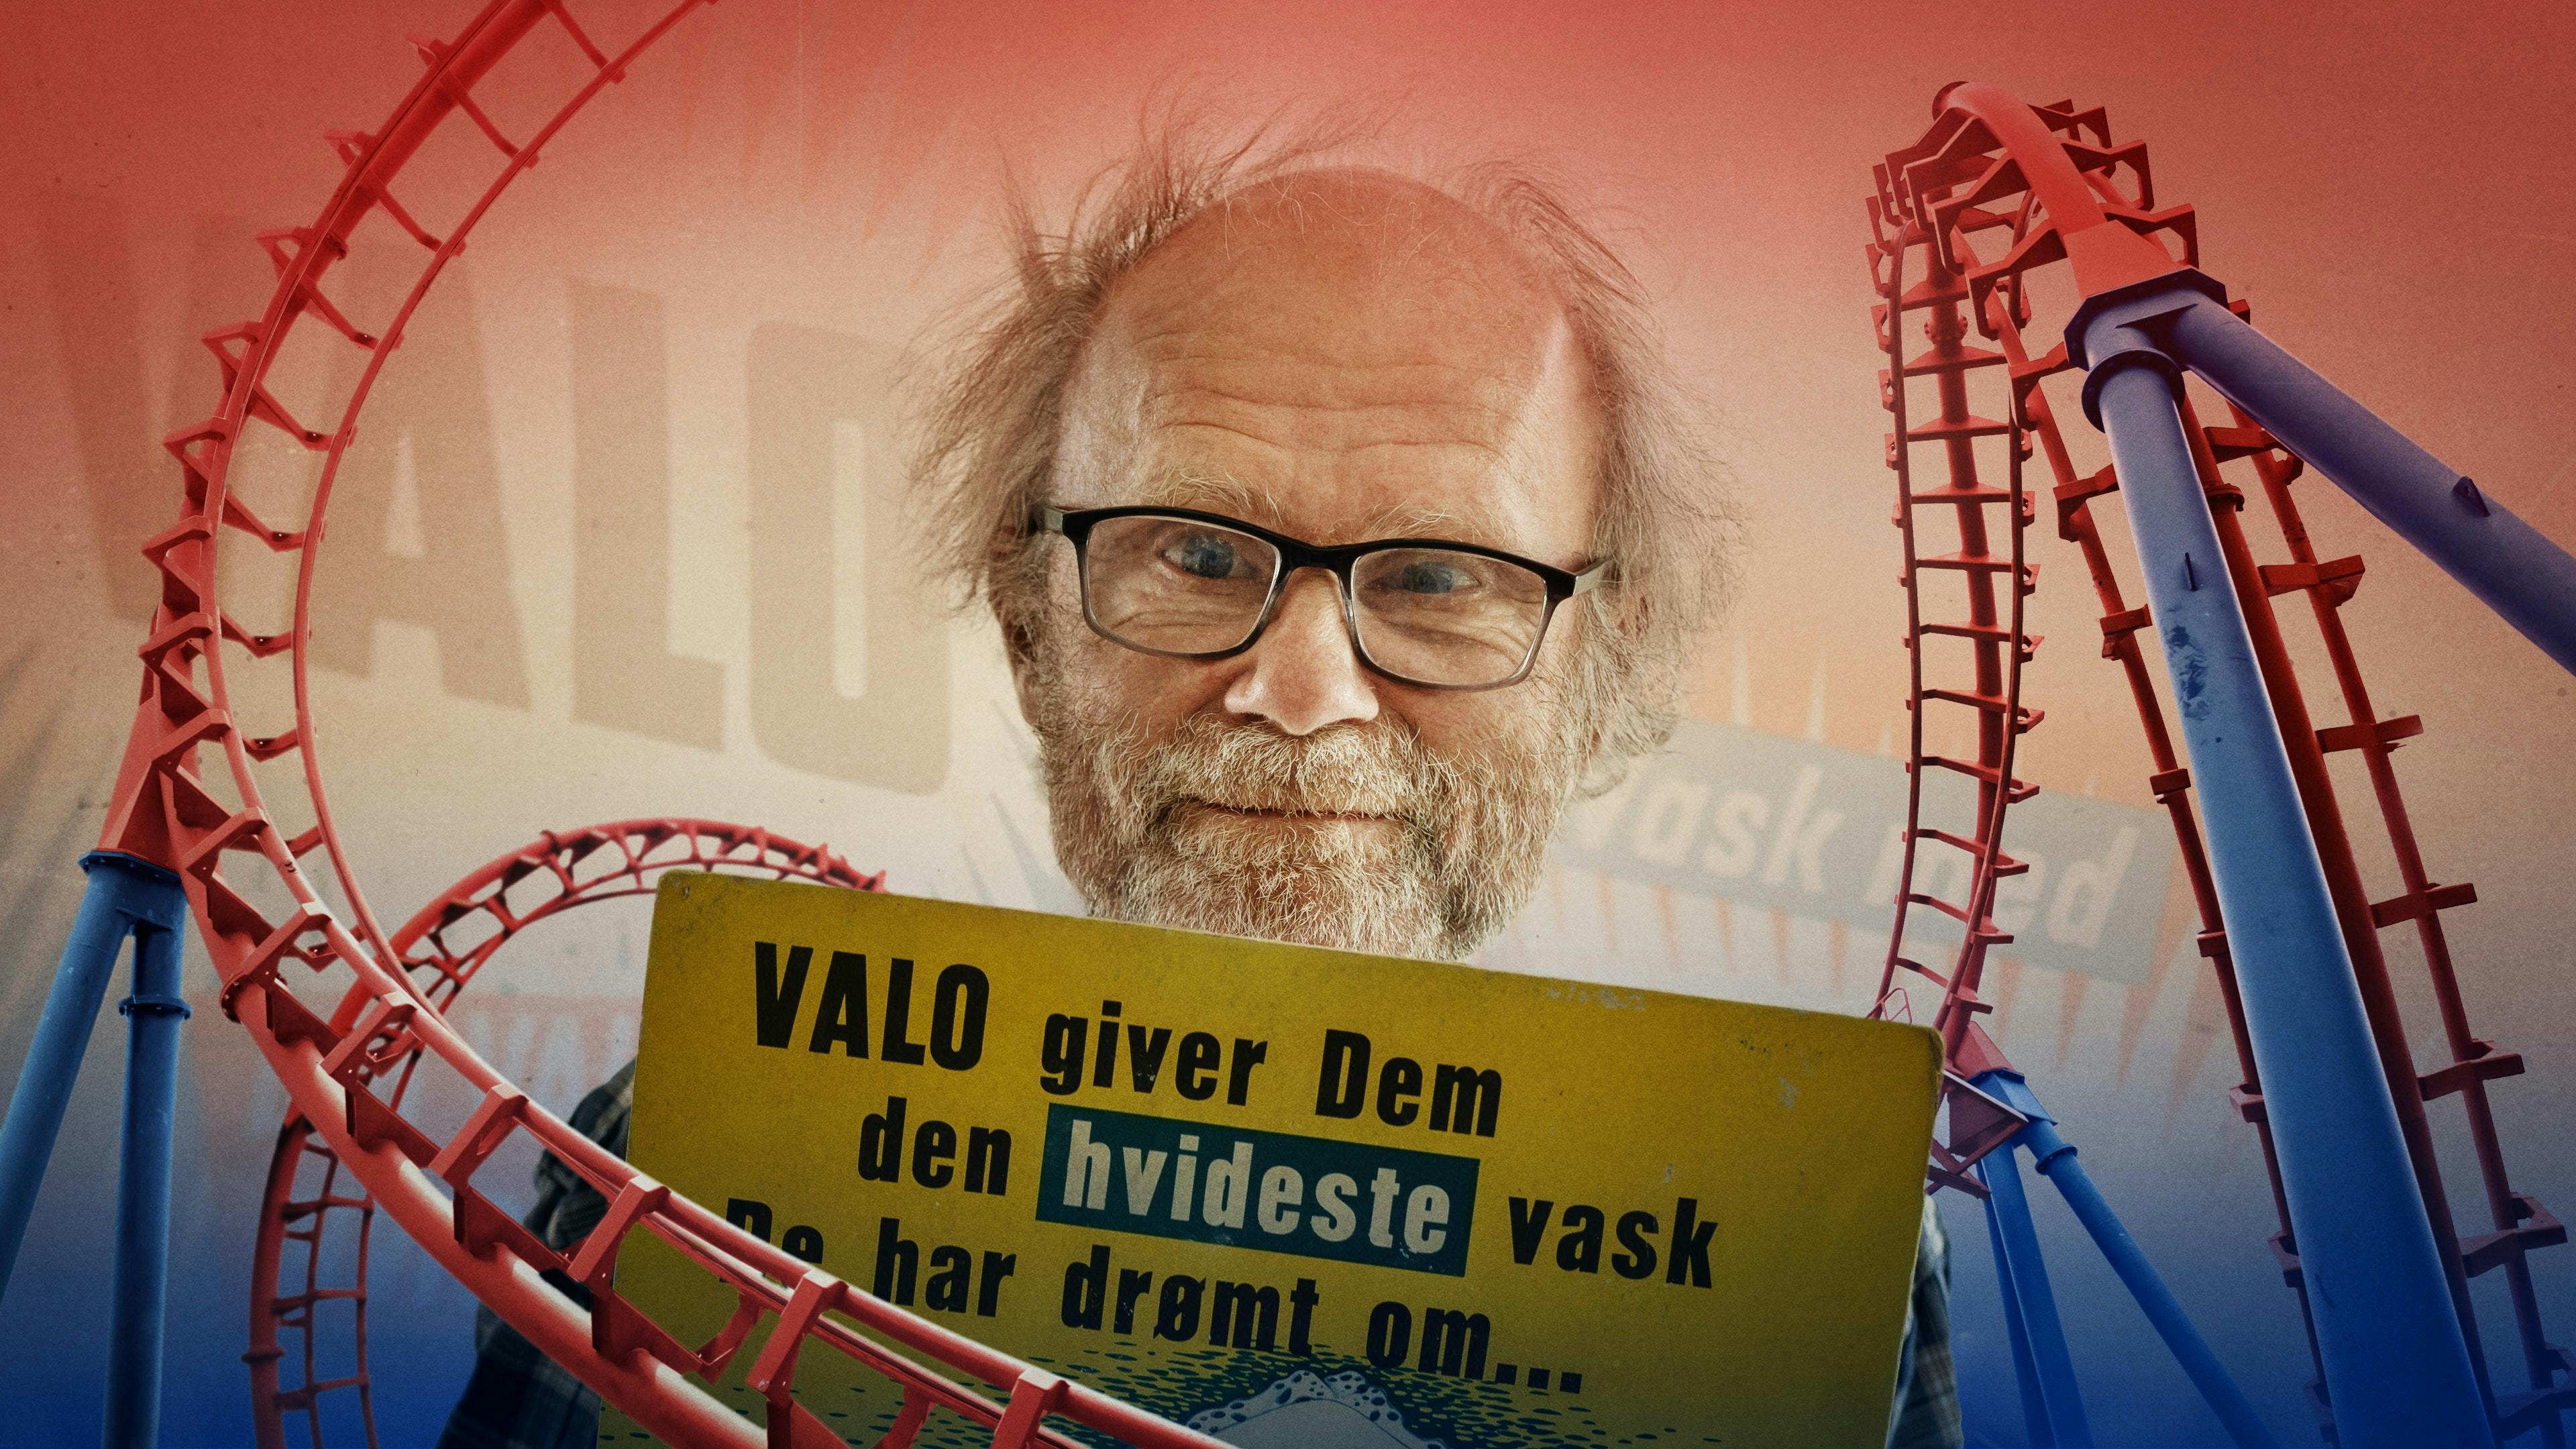 2001 tog Martin Gunnarsen danskerne med storm i DRs rørende dokumentar "Valomanden". Nu er han tilbage på tv.&nbsp;